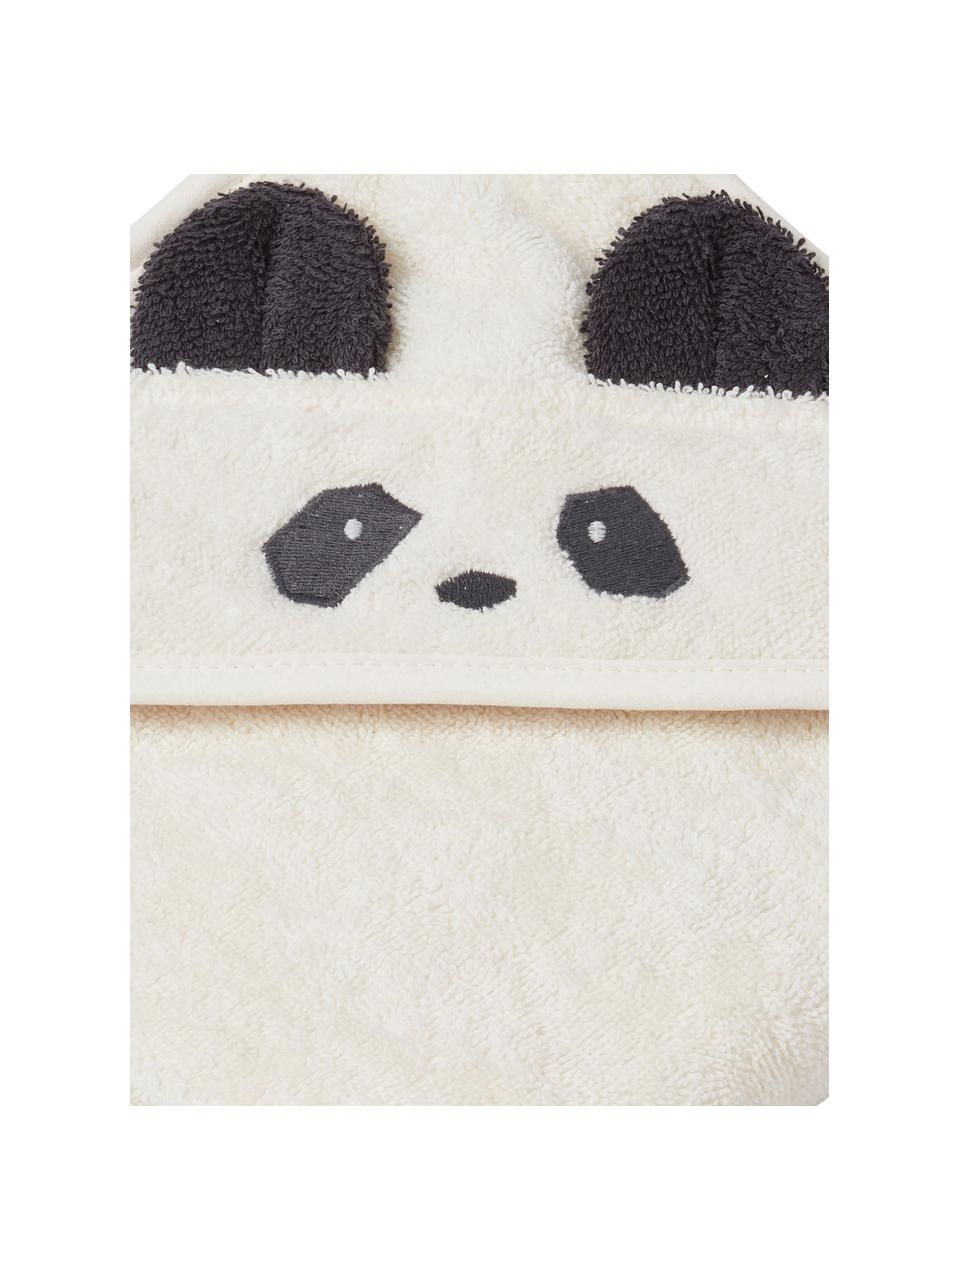 Babyhanddoek Albert Panda, 100% biologisch katoen (katoen badstof), Wit, zwart, B 70 x L 70 cm